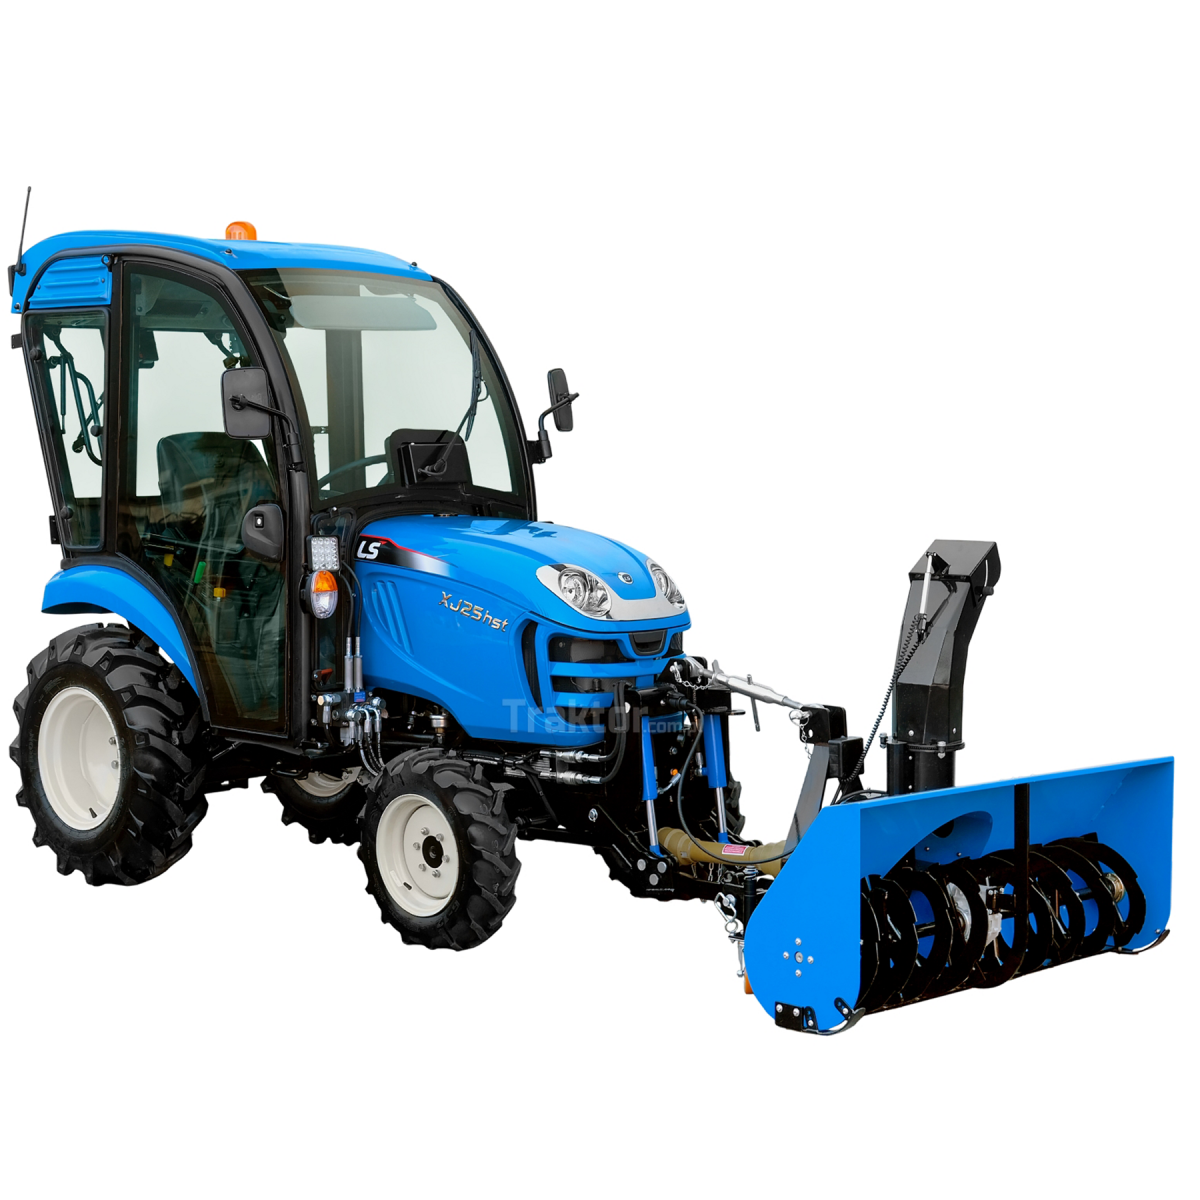 LS Traktor XJ25 HST 4x4 - 24,4 HP / KABINA + Přední závěs 4FARMER + Rotorová sněhová fréza pro přední část traktoru 4FARMER